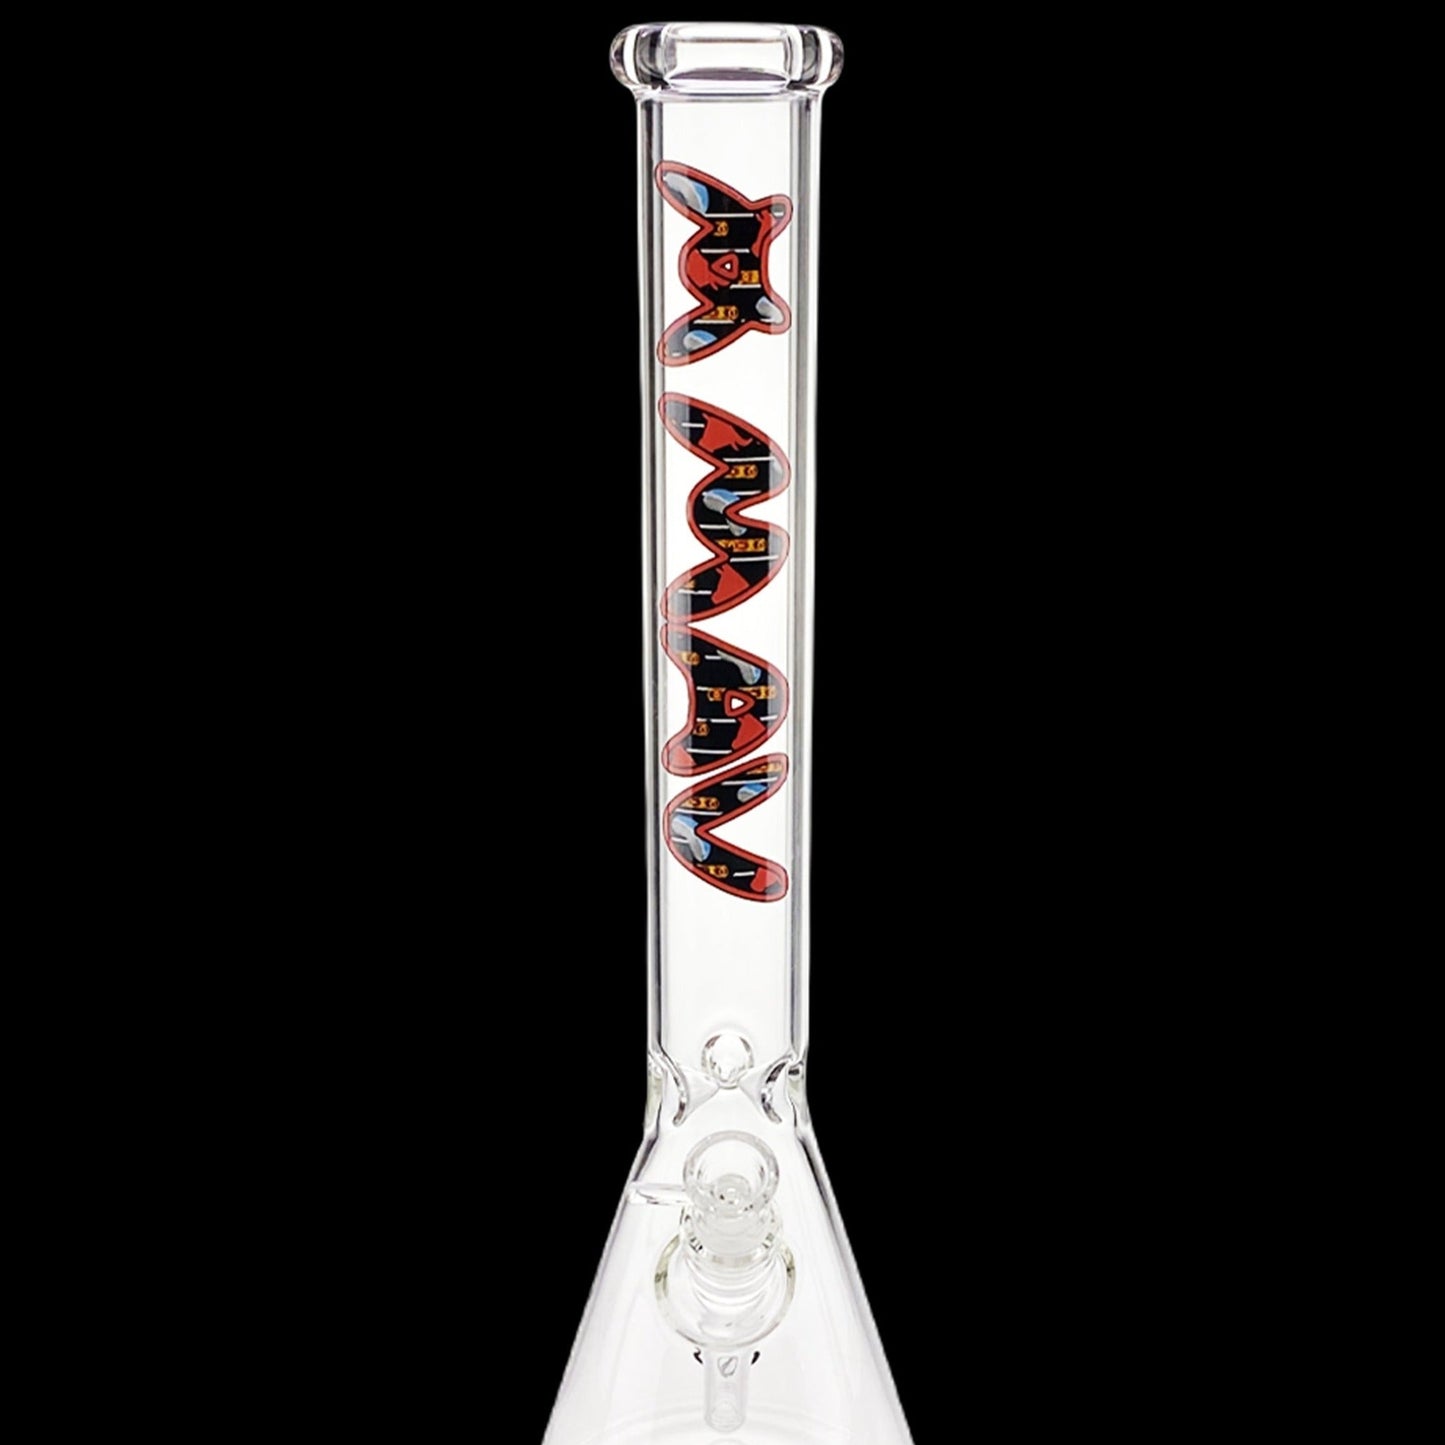 MAV Glass Top City Beaker Bong Best Sales Price - Bongs